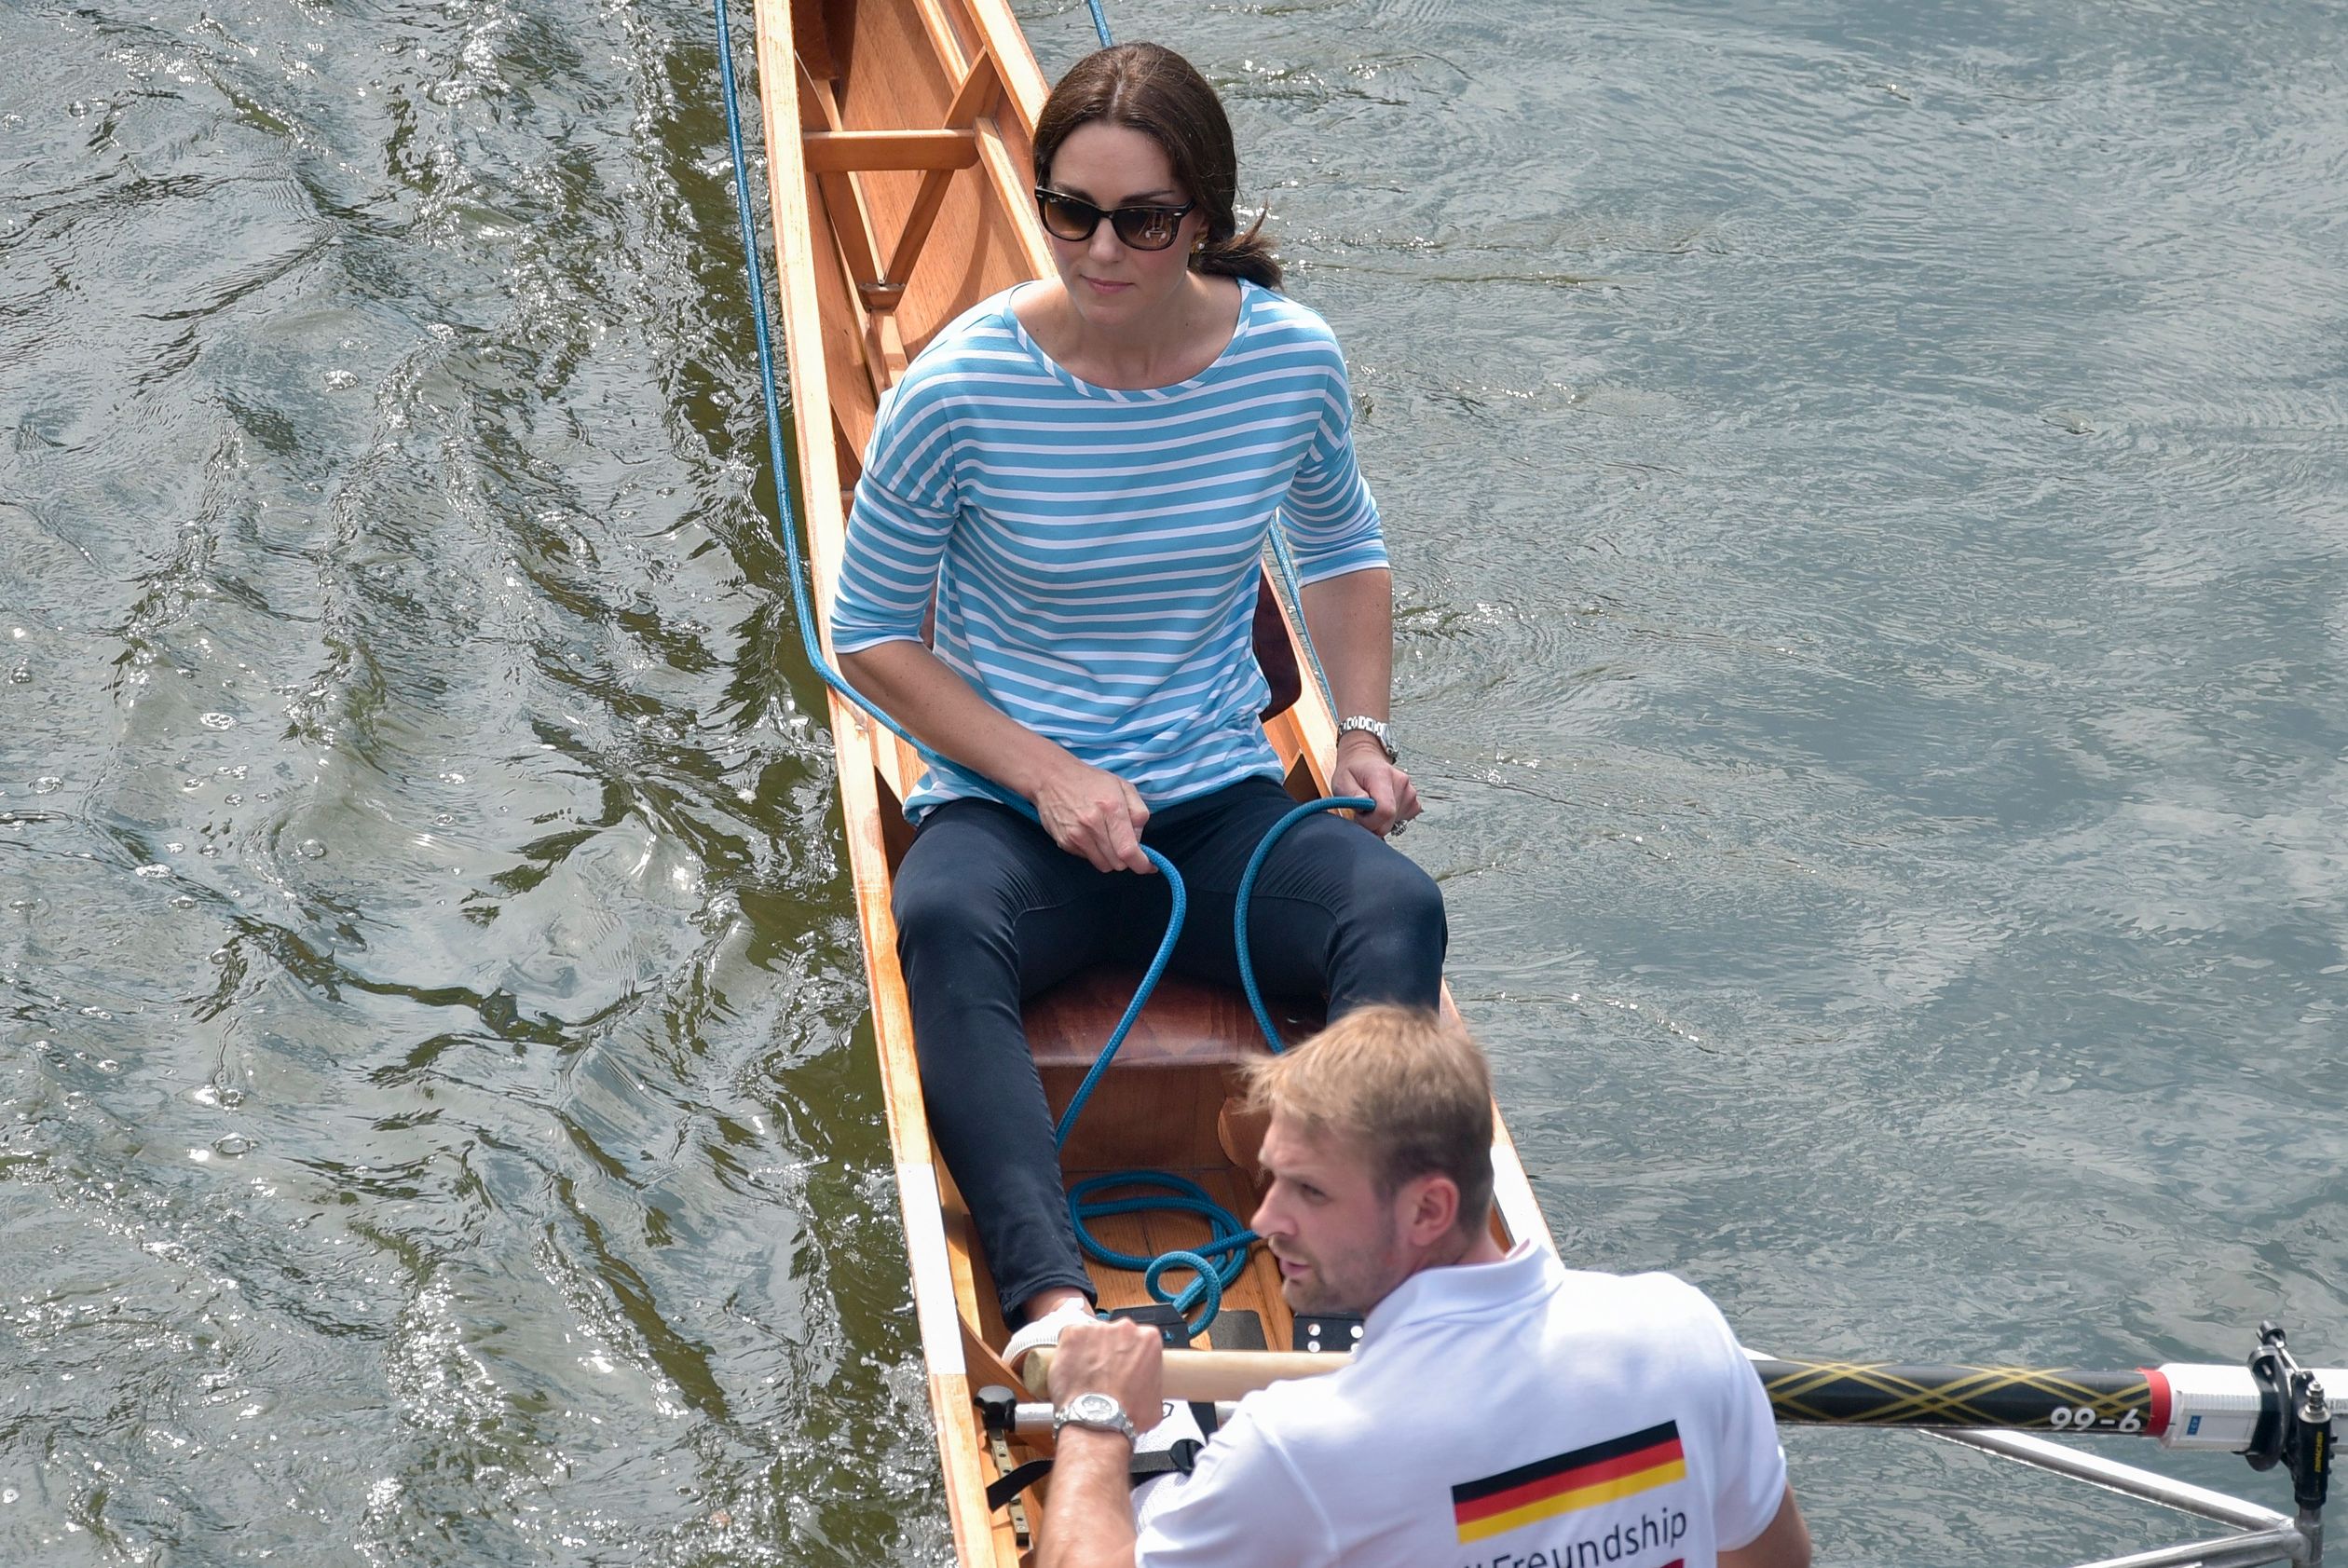 2018: De hertogin van Cambridge stuurt een roeiboot tijdens een vriendschappelijke roeiwedstrijd